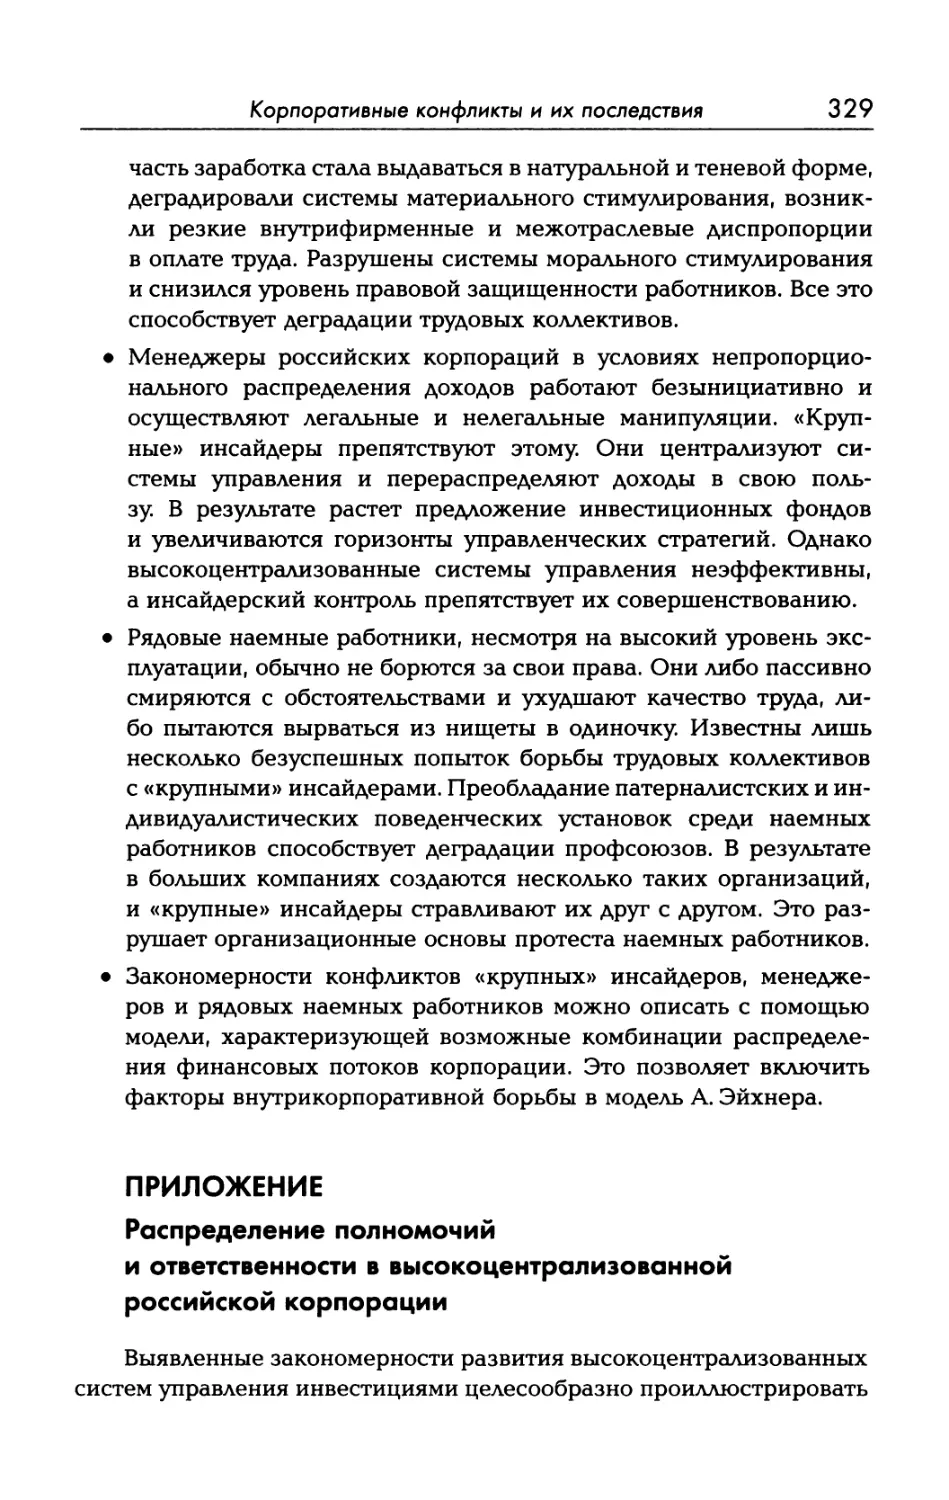 ПРИЛОЖЕНИЕ. Распределение полномочий и ответственности в высокоцентрализованной российской корпорации